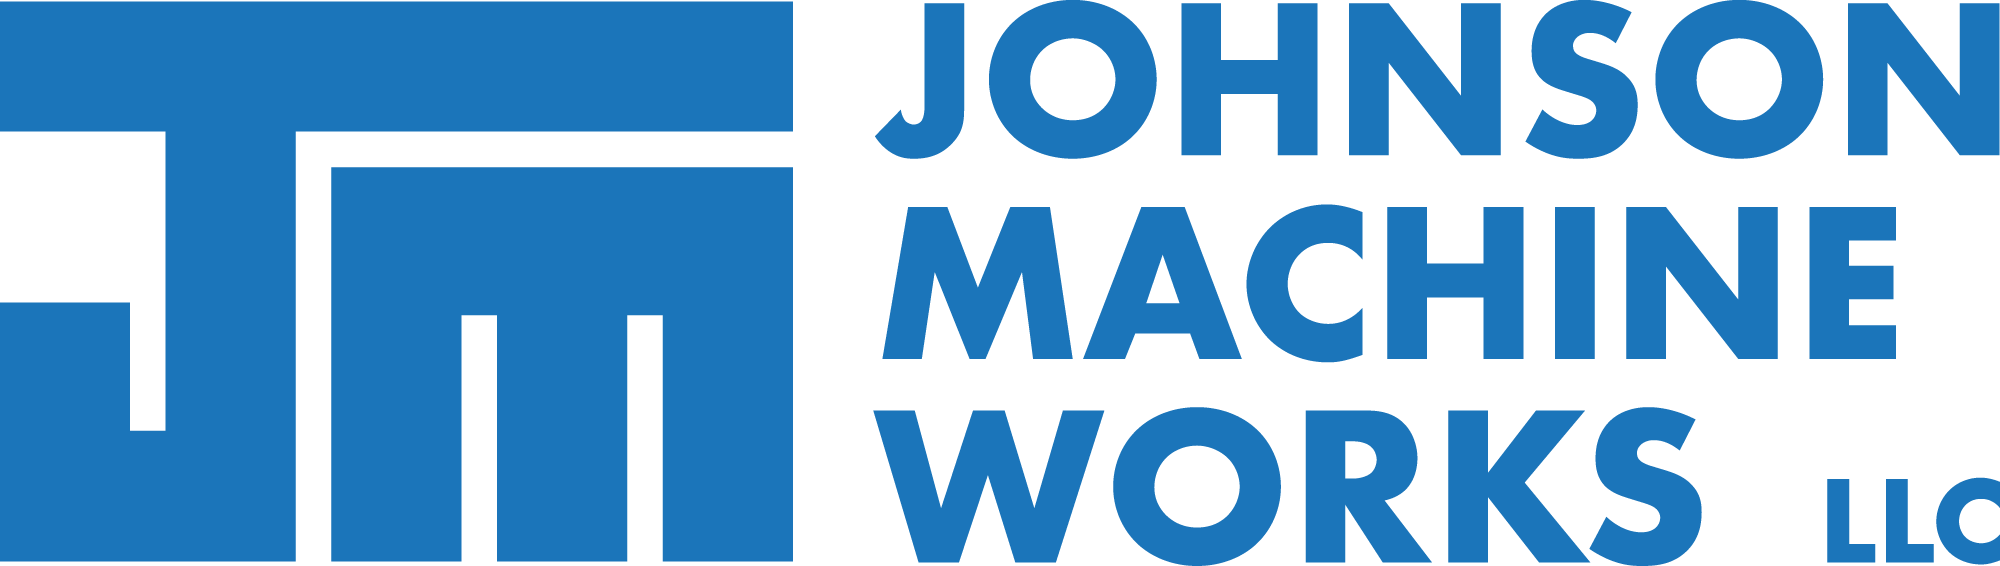 Johnson Machine Works